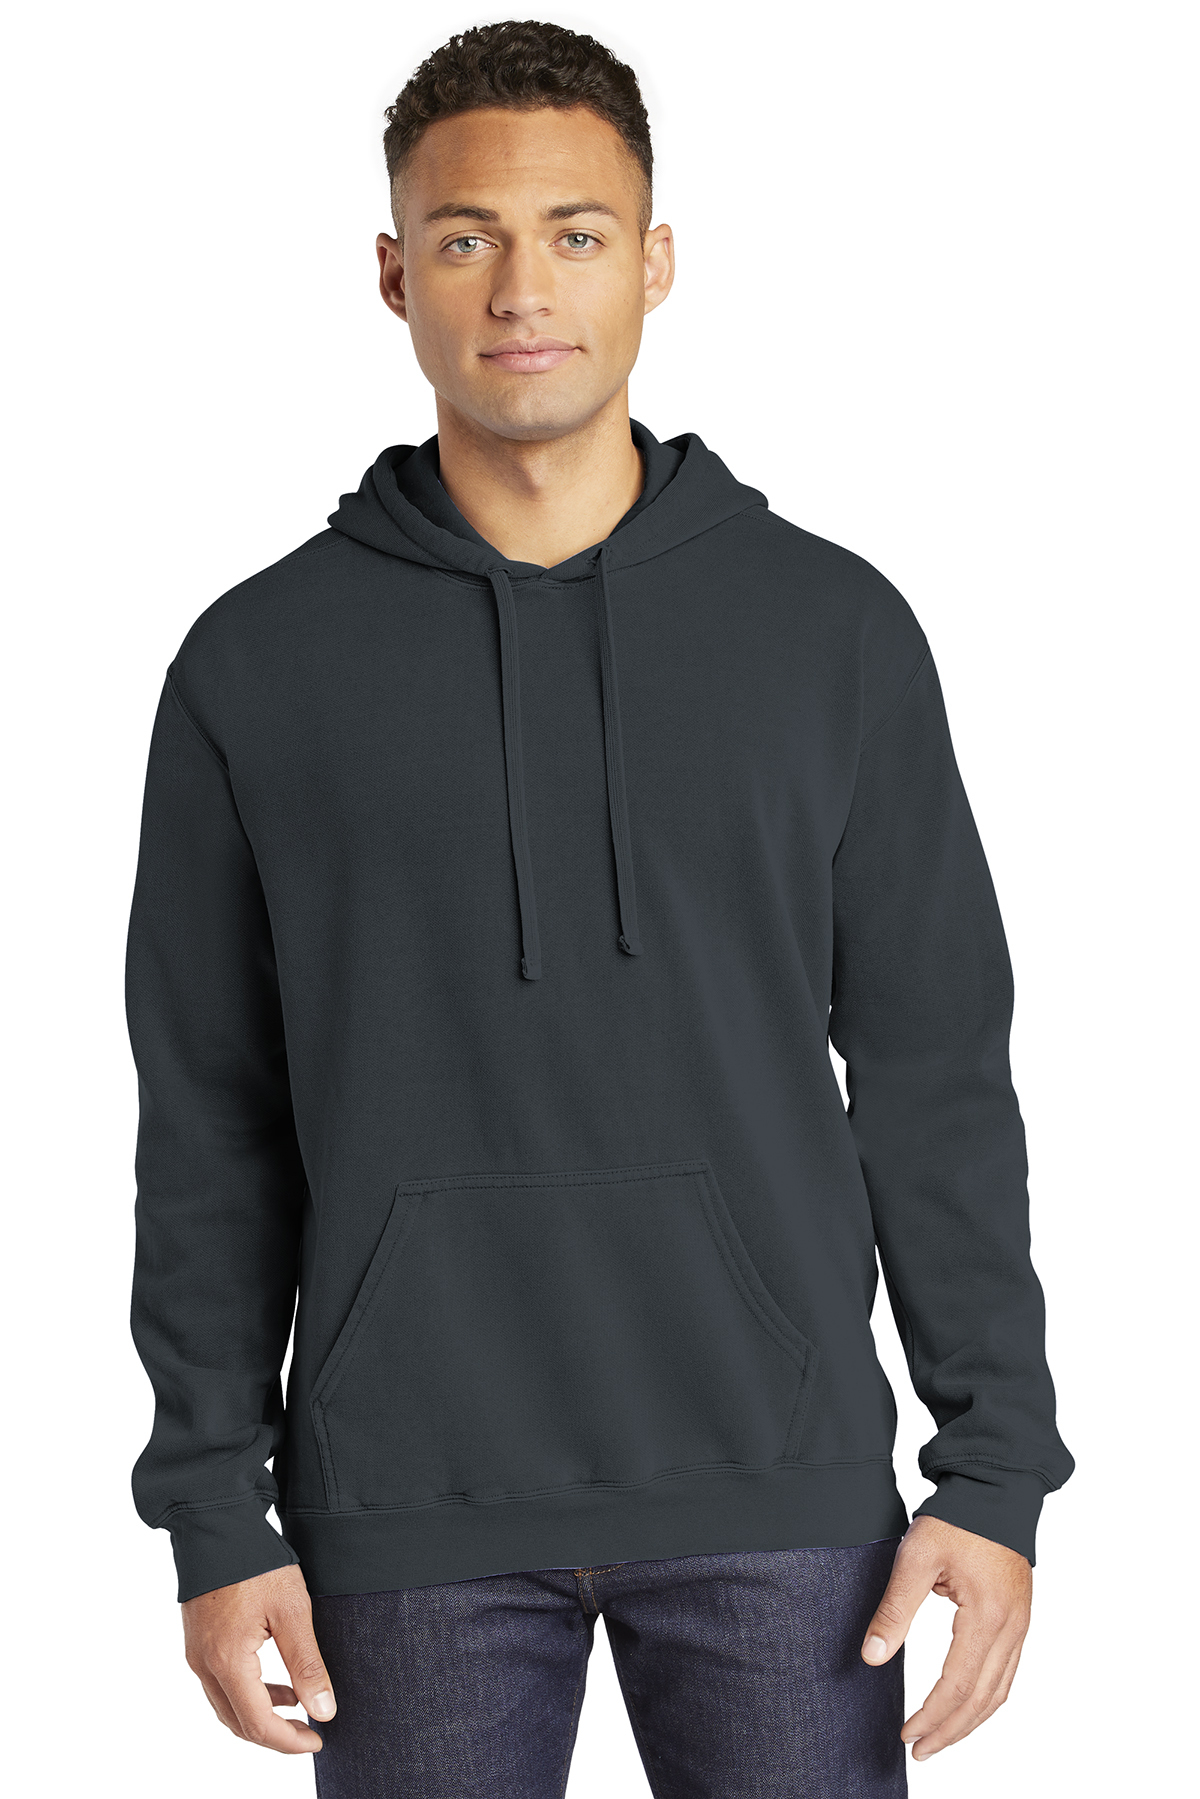 Comfort Colors ® Ring Spun Hooded Sweatshirt | Sweatshirts/Fleece ...